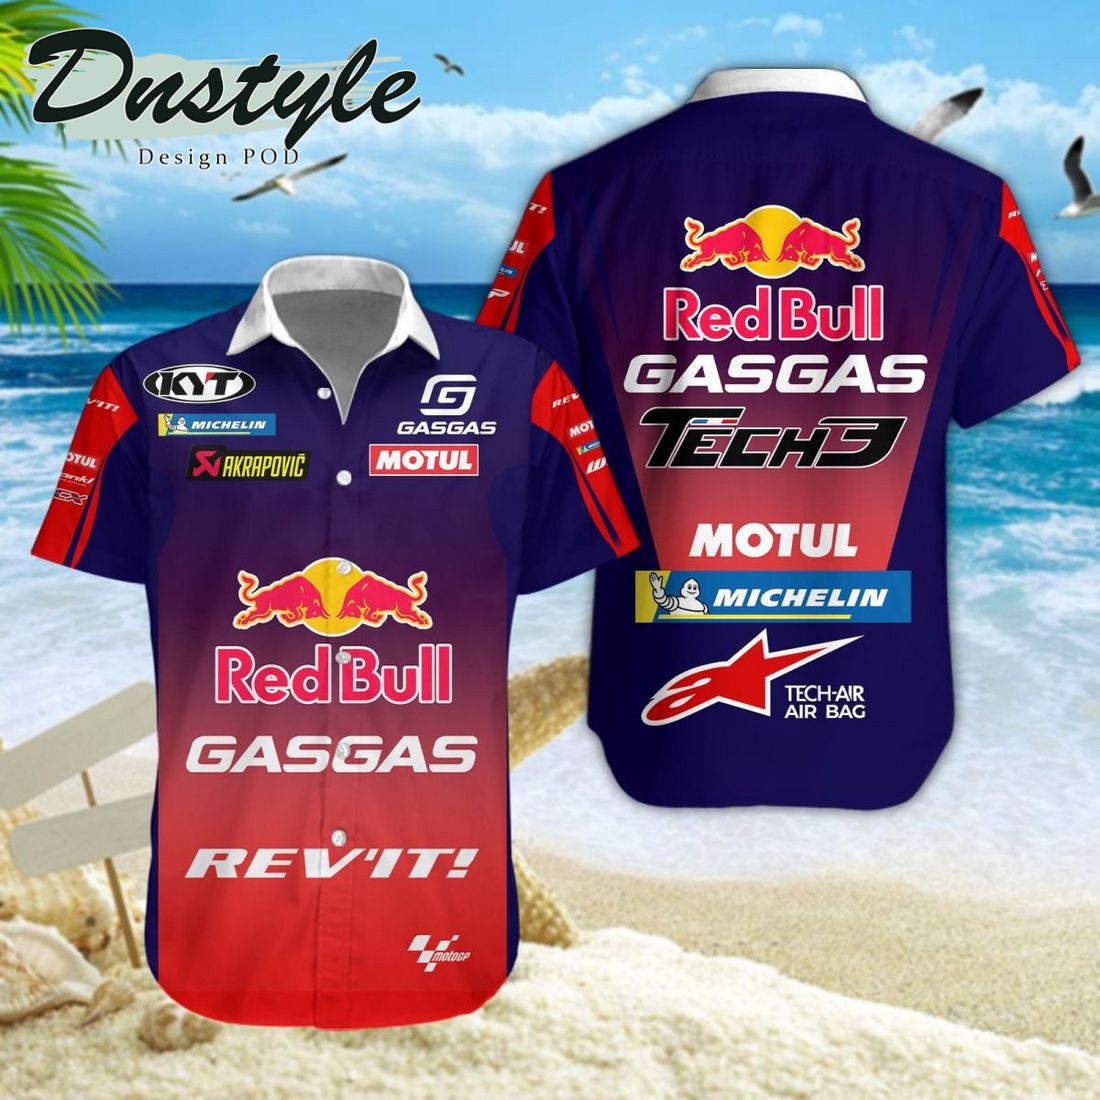 Prima Pramac Racing MotoGP 2024 Hawaiian Shirt